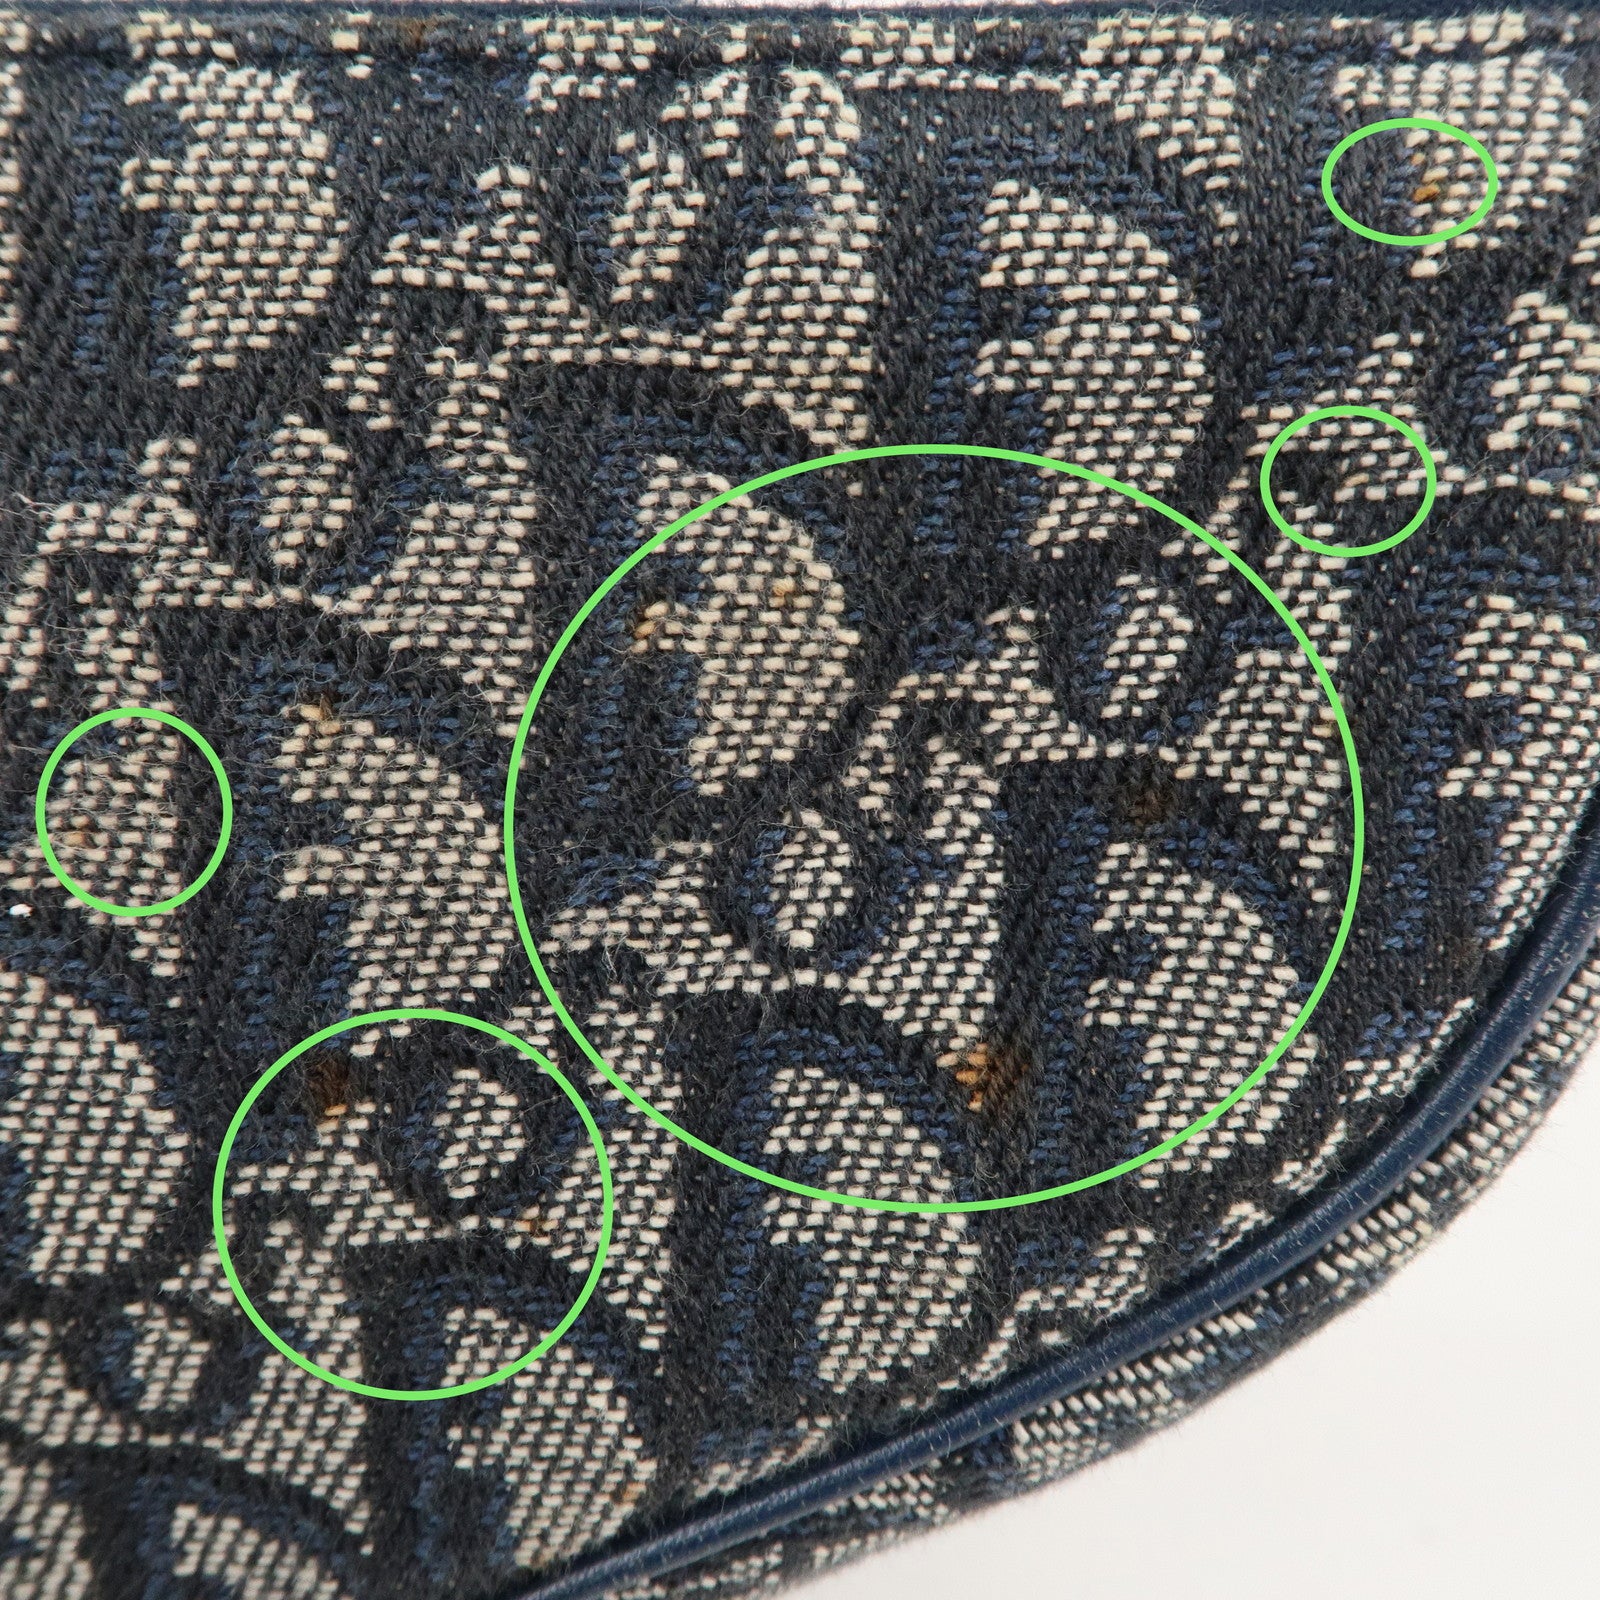 Christian Dior Saddle Bag Trotter Saddle Pouch Navy Shoulder Bag Canvas  20x15cm